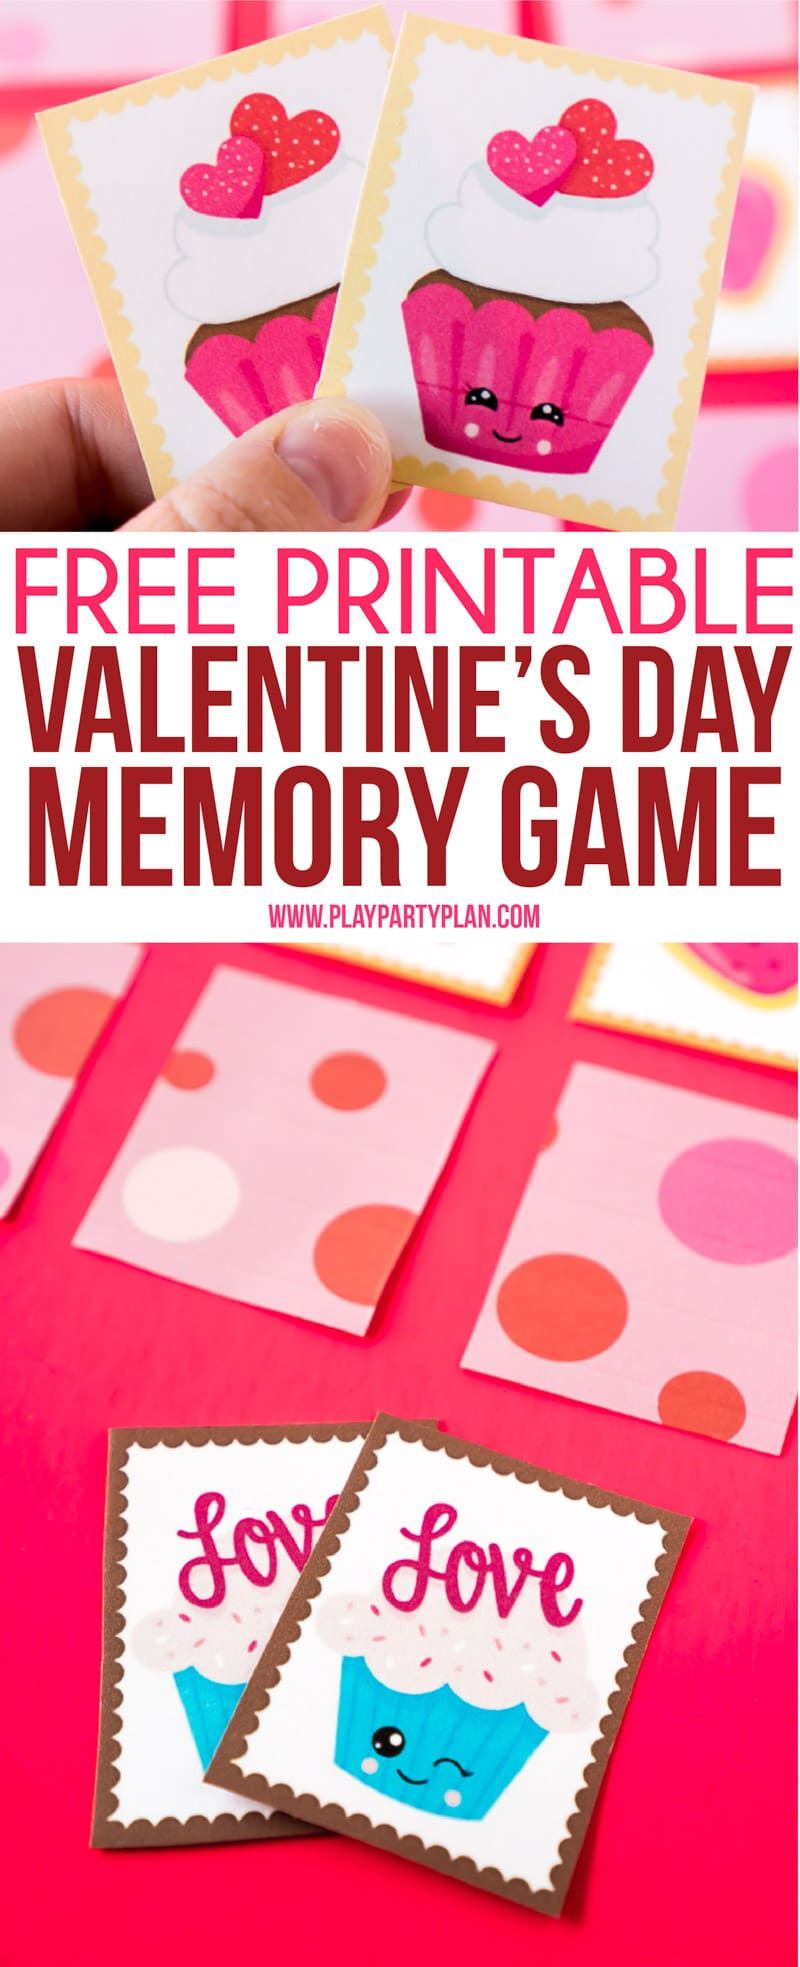 Lõbus sõbrapäeva mälumäng lastele või eakatele! Lihtsalt printige välja armsad sõbrapäeva-teemalised kaardid, seadke need välja ja vaadake, kes leiab esimesena kõige rohkem vasteid! Üks lihtsamaid sõbrapäeva mänge üldse! Sobib suurepäraselt kooliklasside pidudeks. #ValentinesDay #kidsgames #Printable #kidsactivities